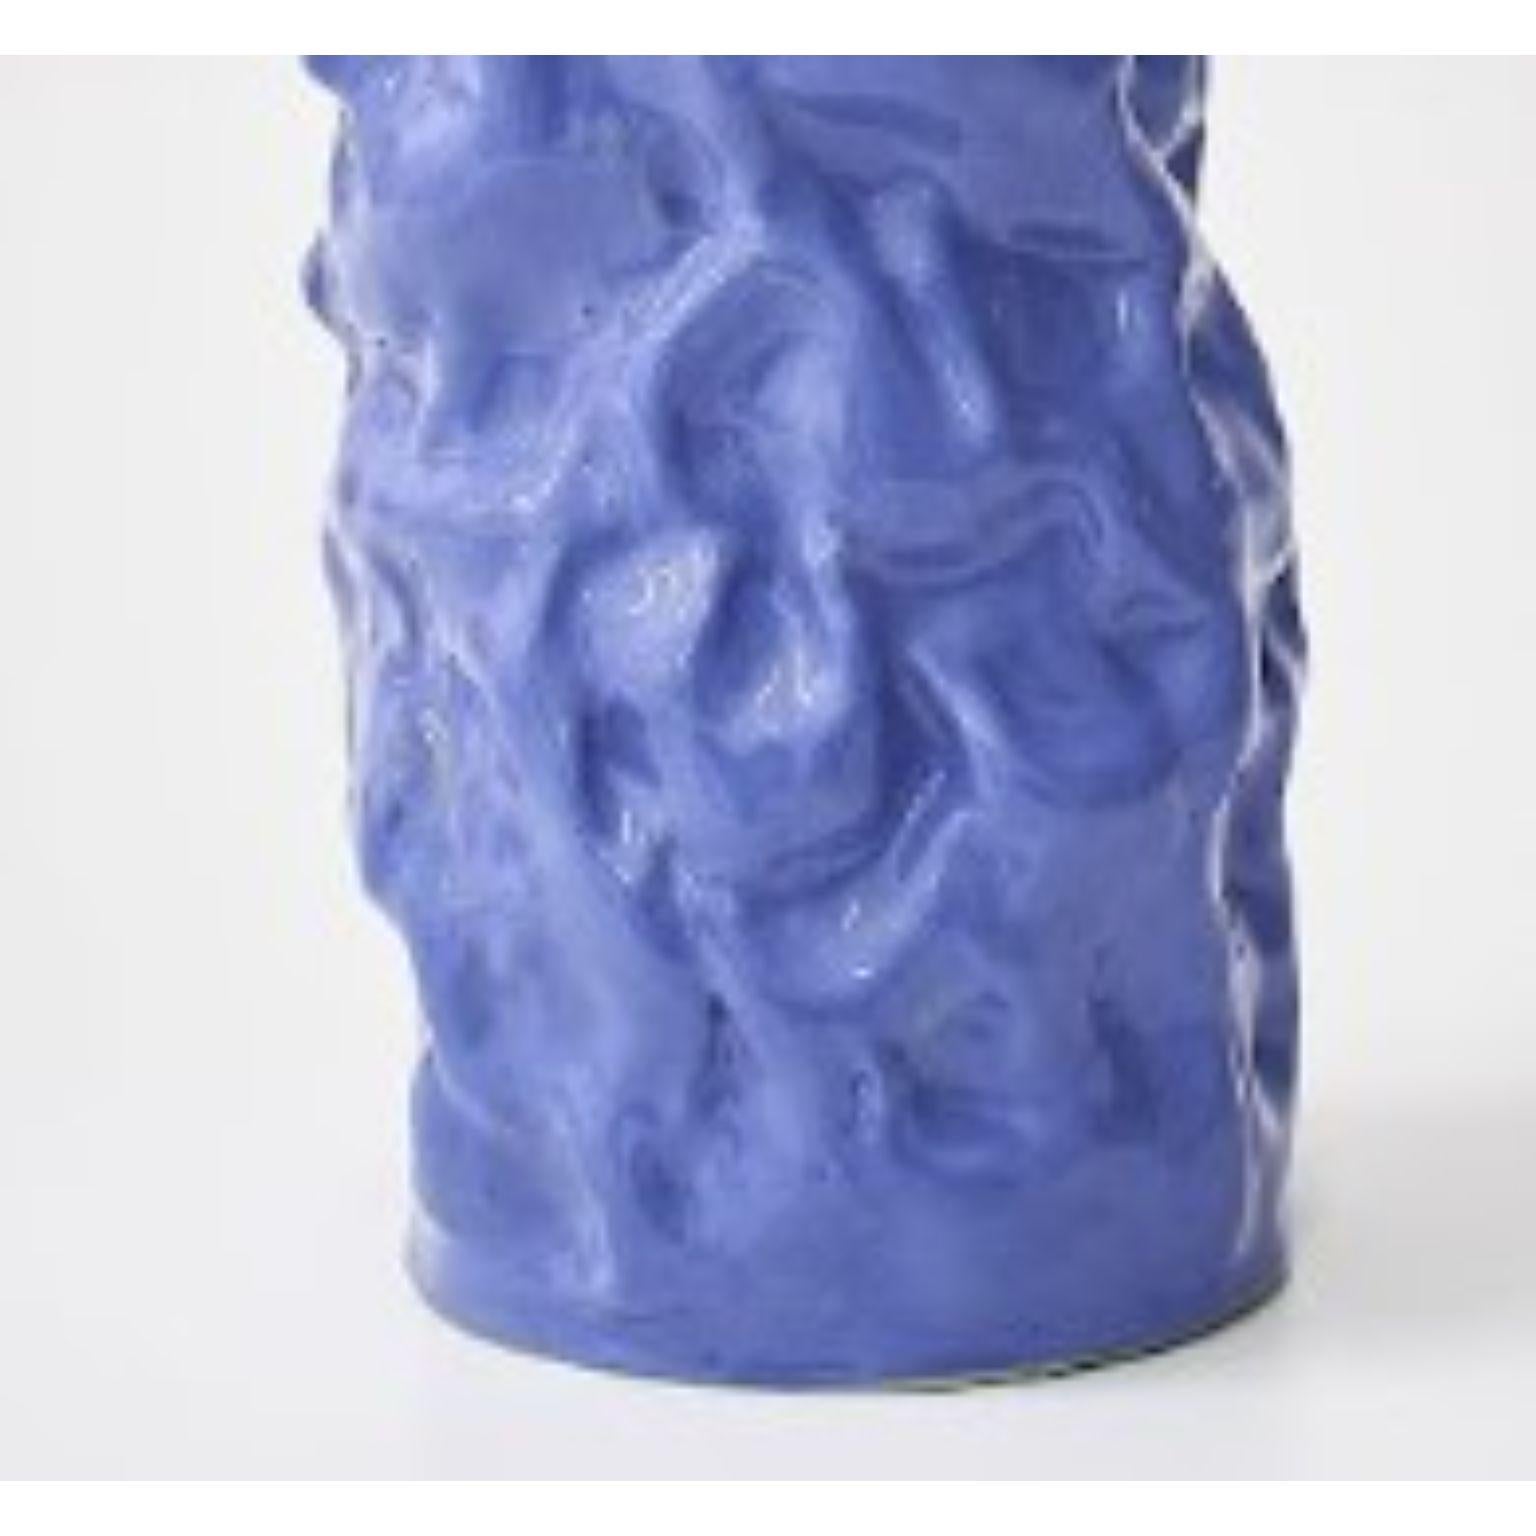 Polish Wrinkled Blue Vase by Siup Studio For Sale